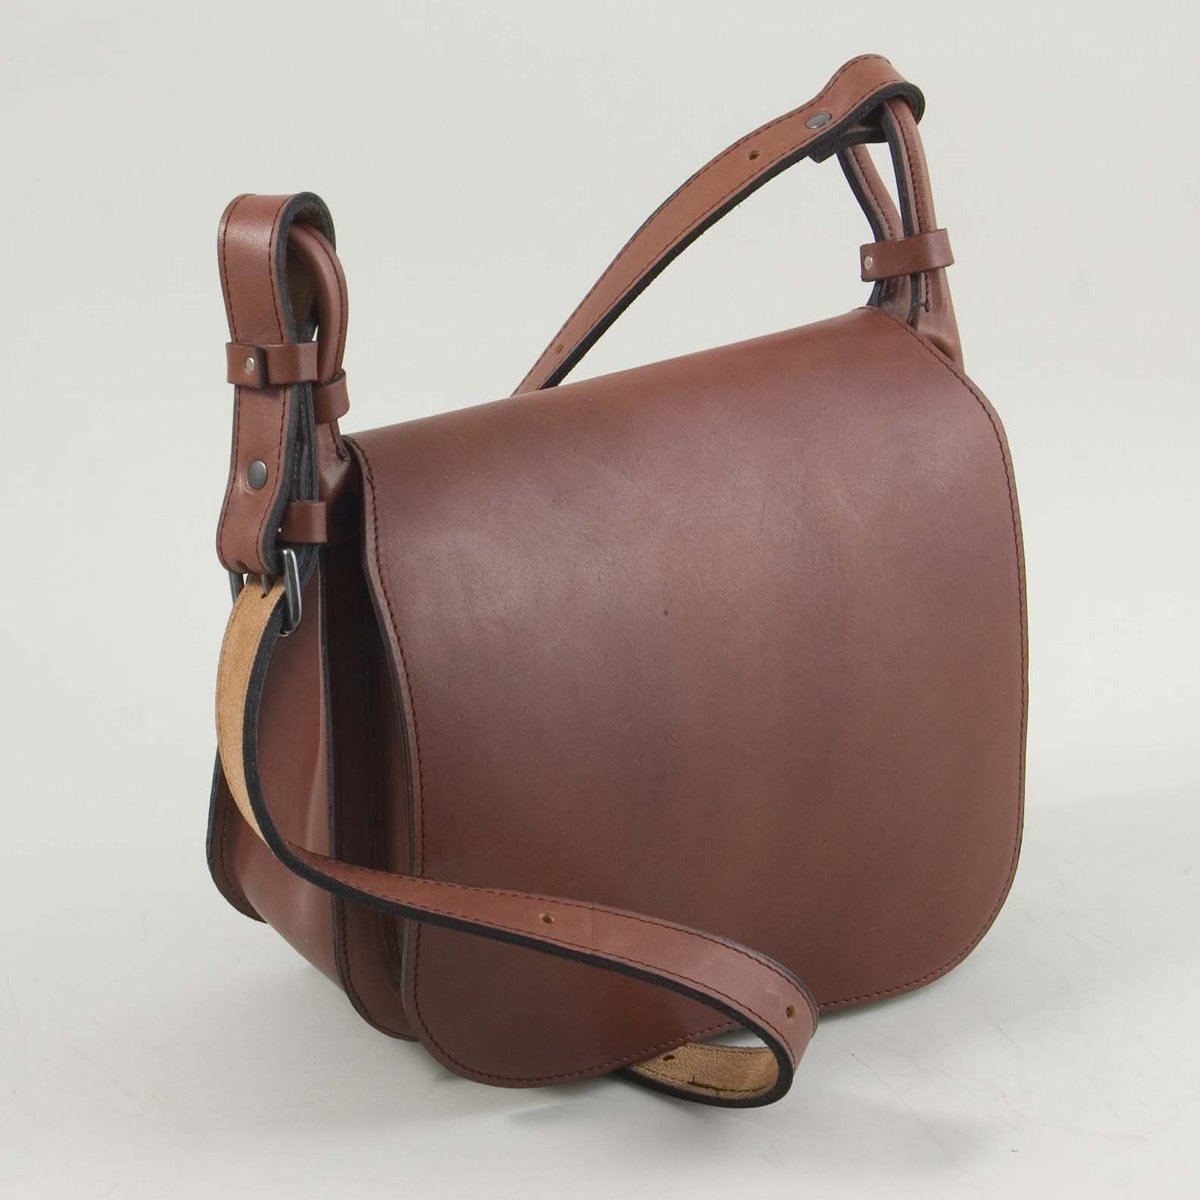 Handbags & Shoulder Bags - The Hunting Bag